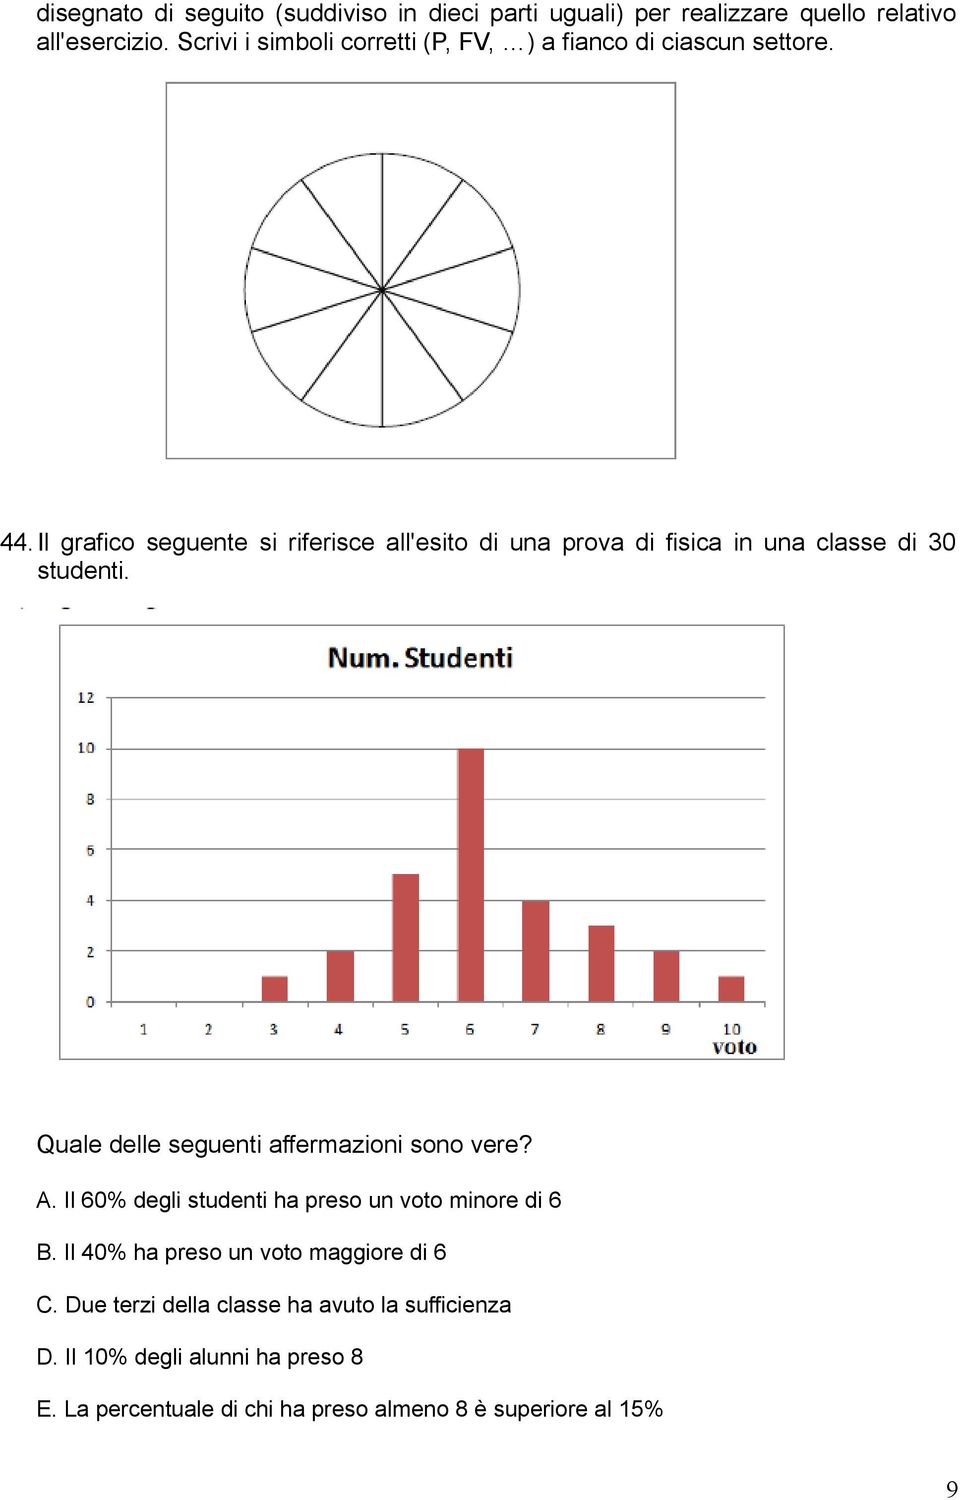 Il grafico seguente si riferisce all'esito di una prova di fisica in una classe di 30 studenti.